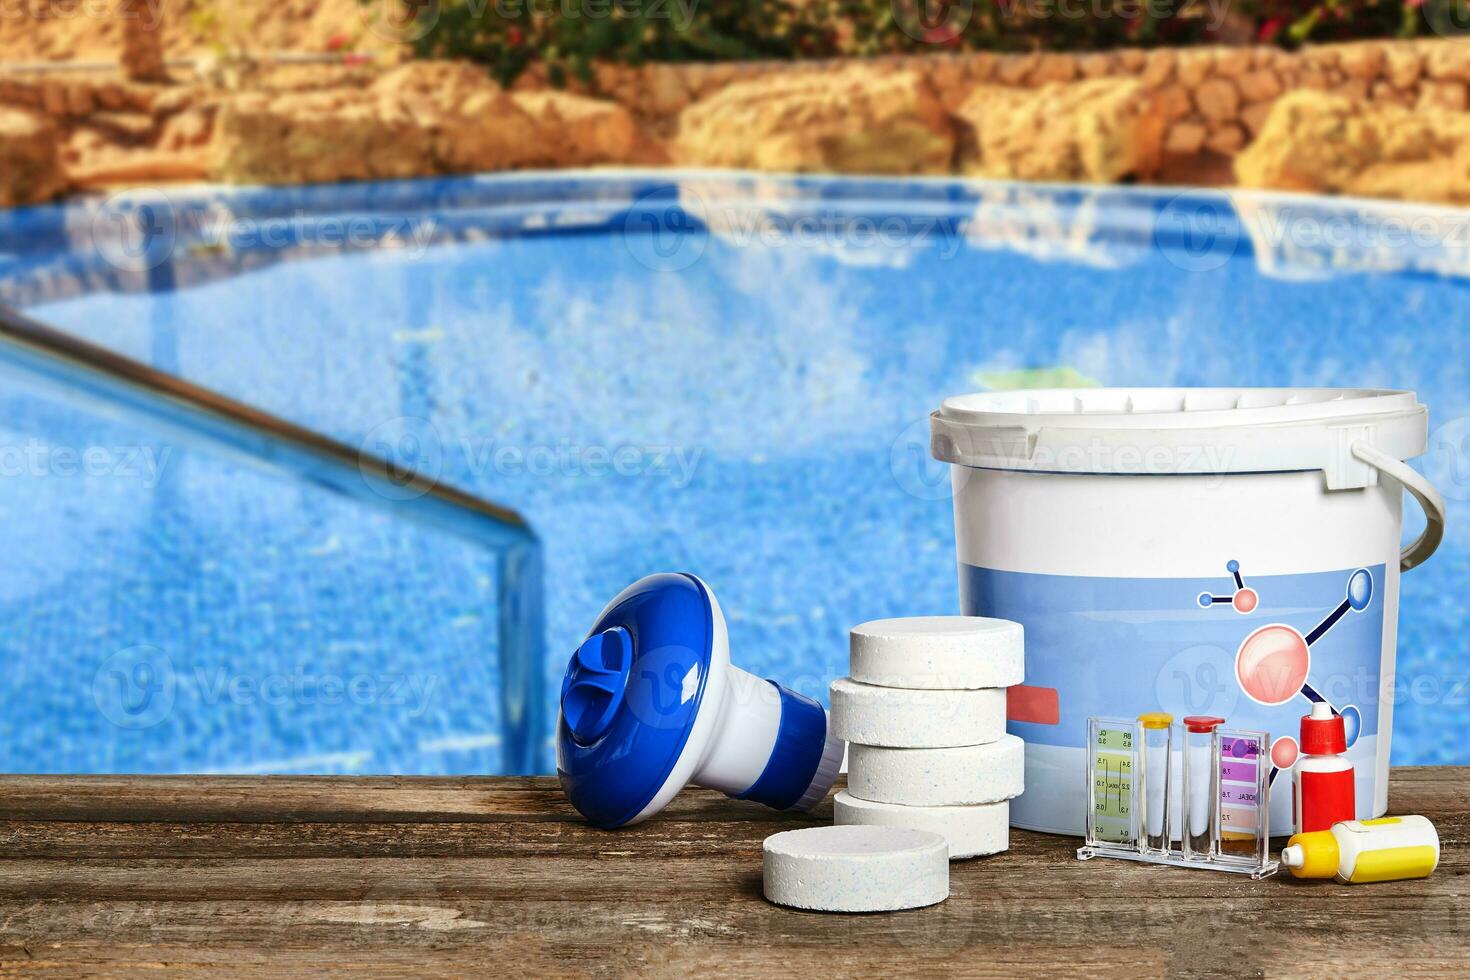 Ausrüstung mit chemisch Reinigung Produkte und Werkzeuge zum das Instandhaltung von das Schwimmen Schwimmbad. foto